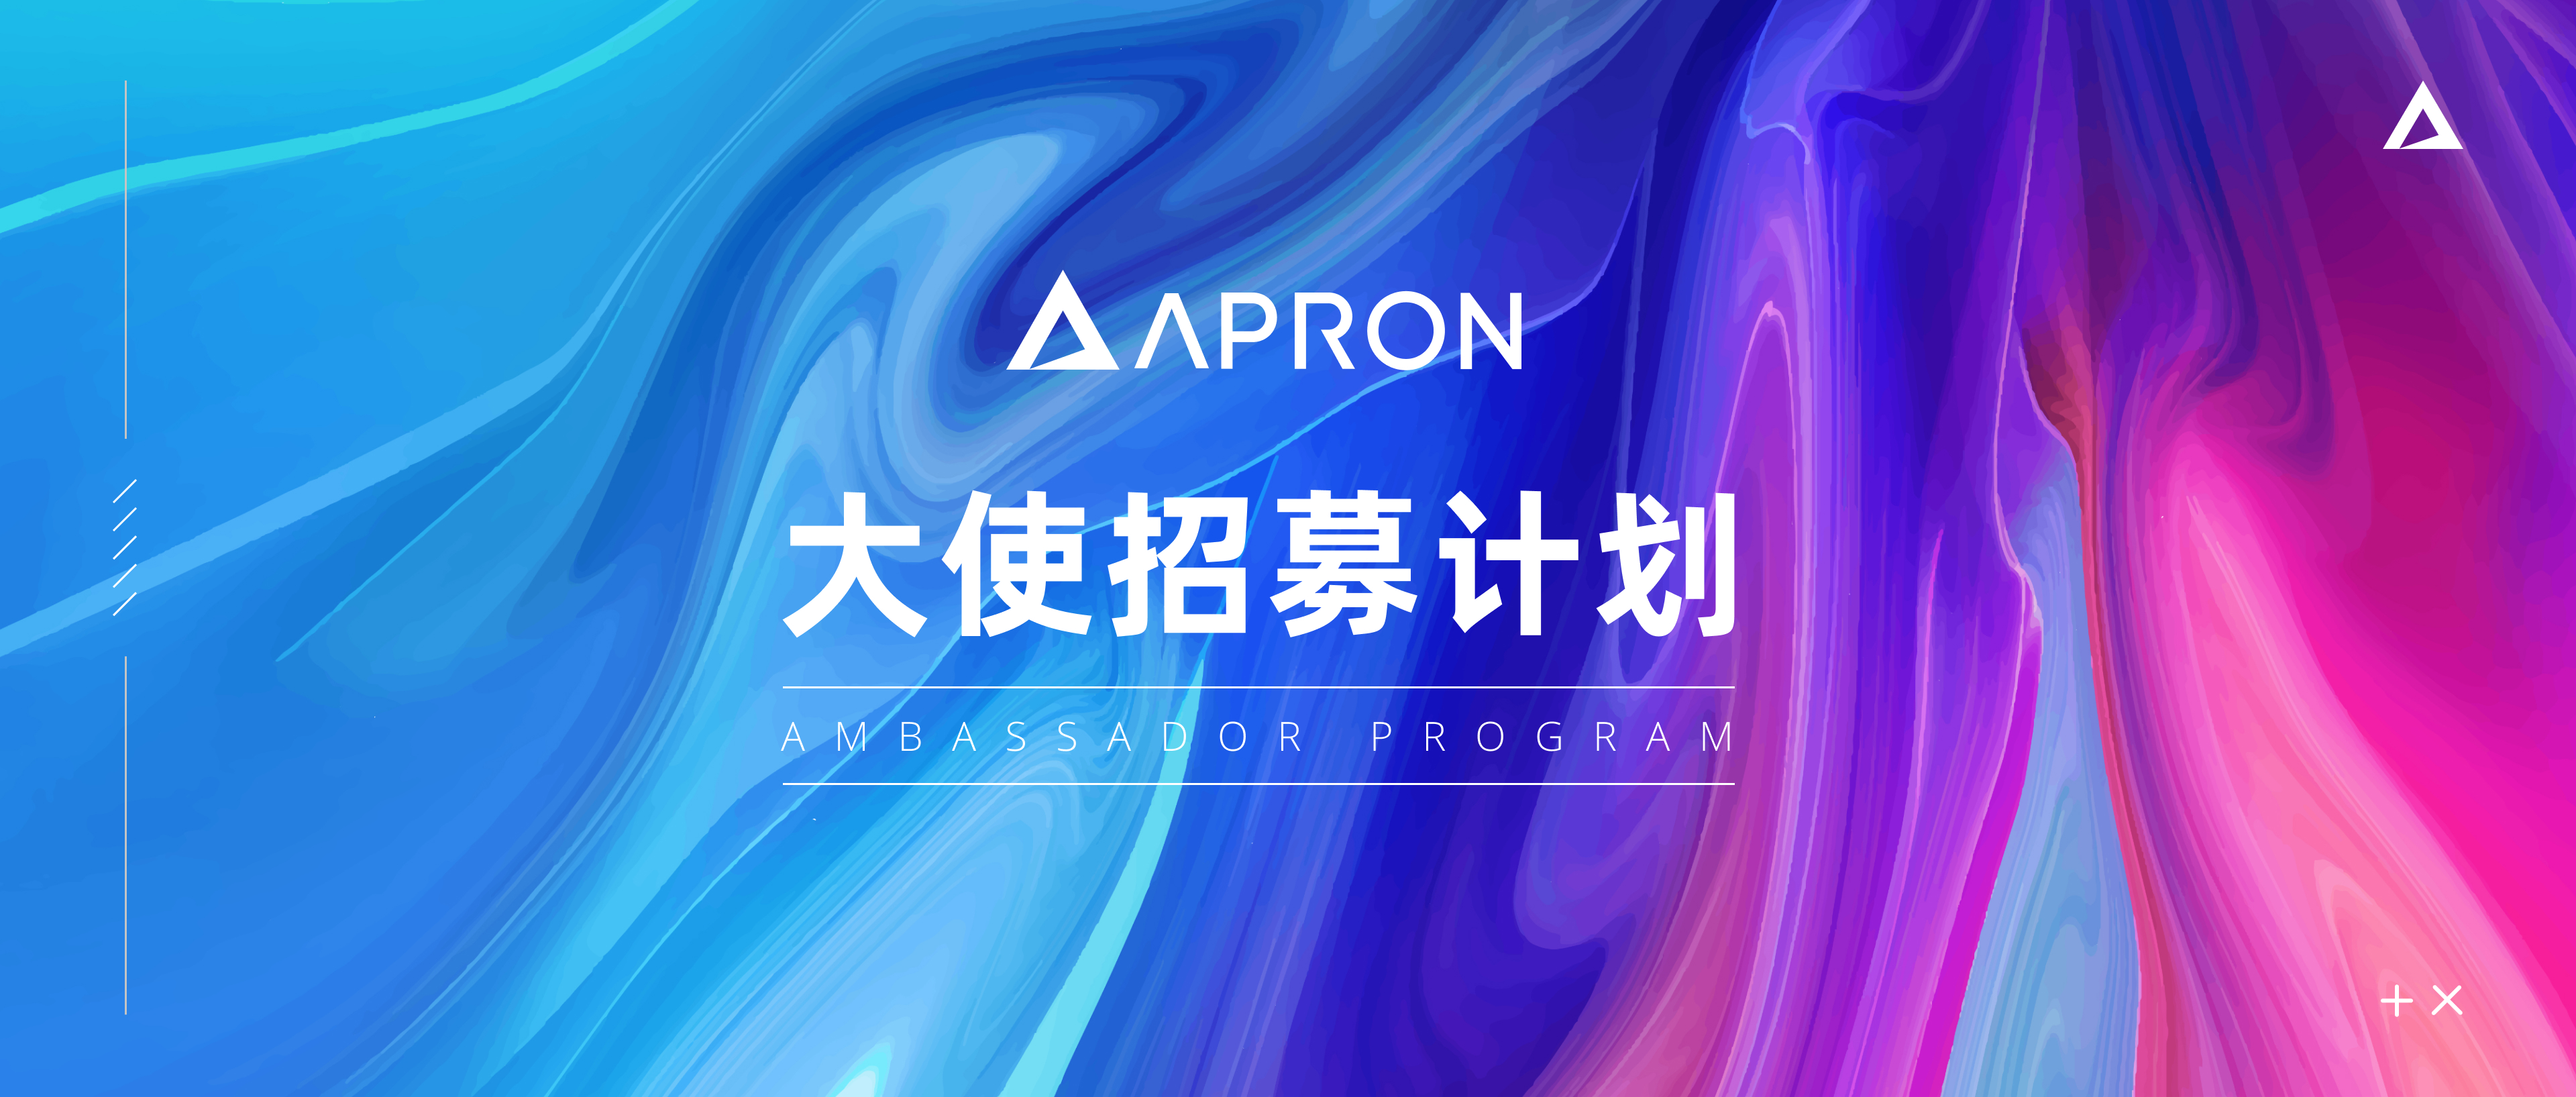 Apron Network周报-全球社区人数达5万人